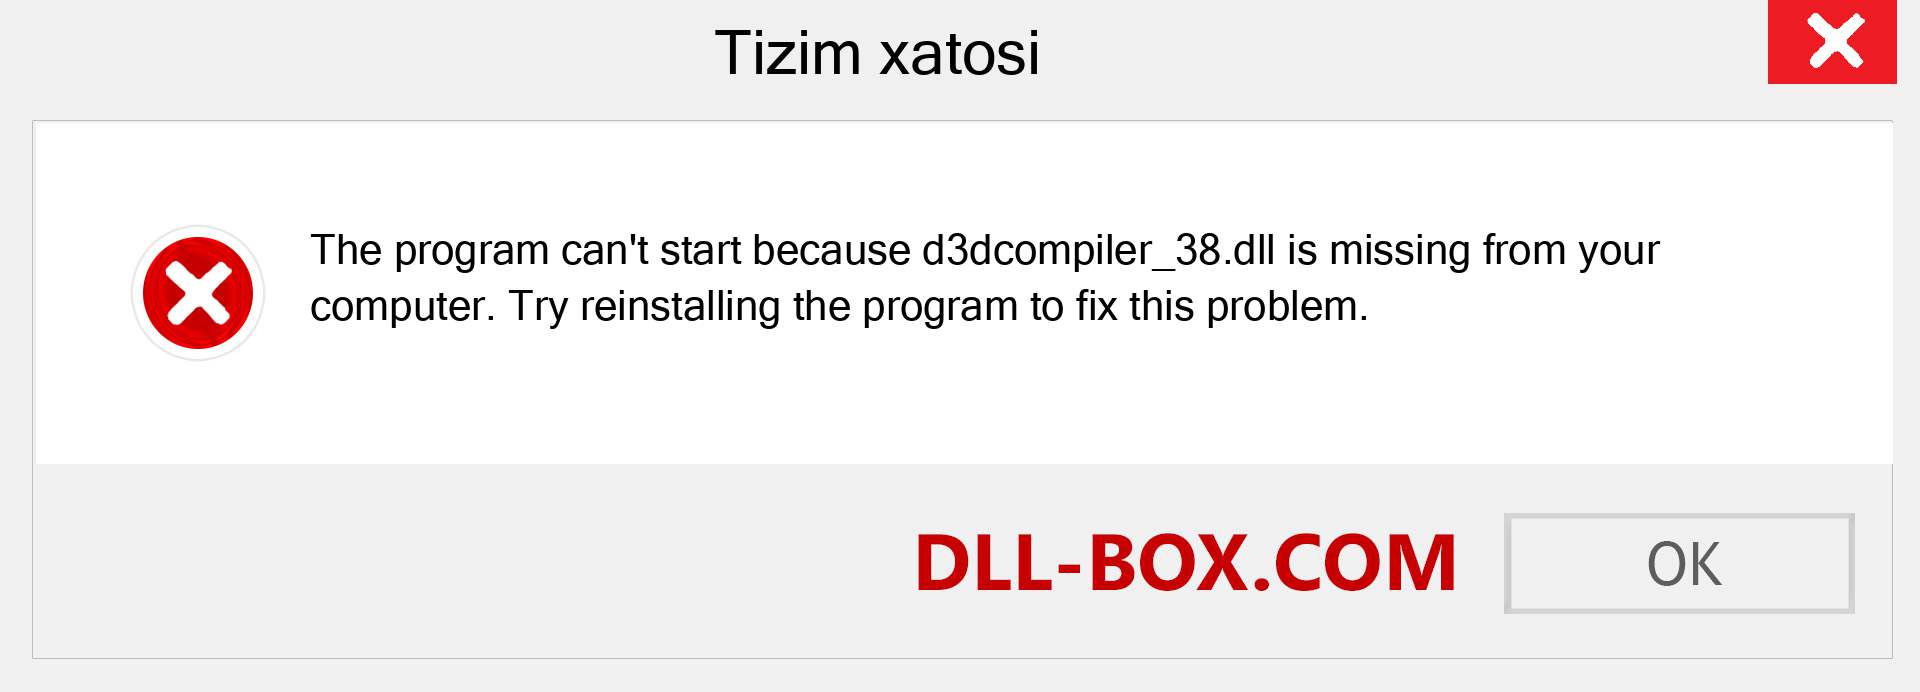 d3dcompiler_38.dll fayli yo'qolganmi?. Windows 7, 8, 10 uchun yuklab olish - Windowsda d3dcompiler_38 dll etishmayotgan xatoni tuzating, rasmlar, rasmlar